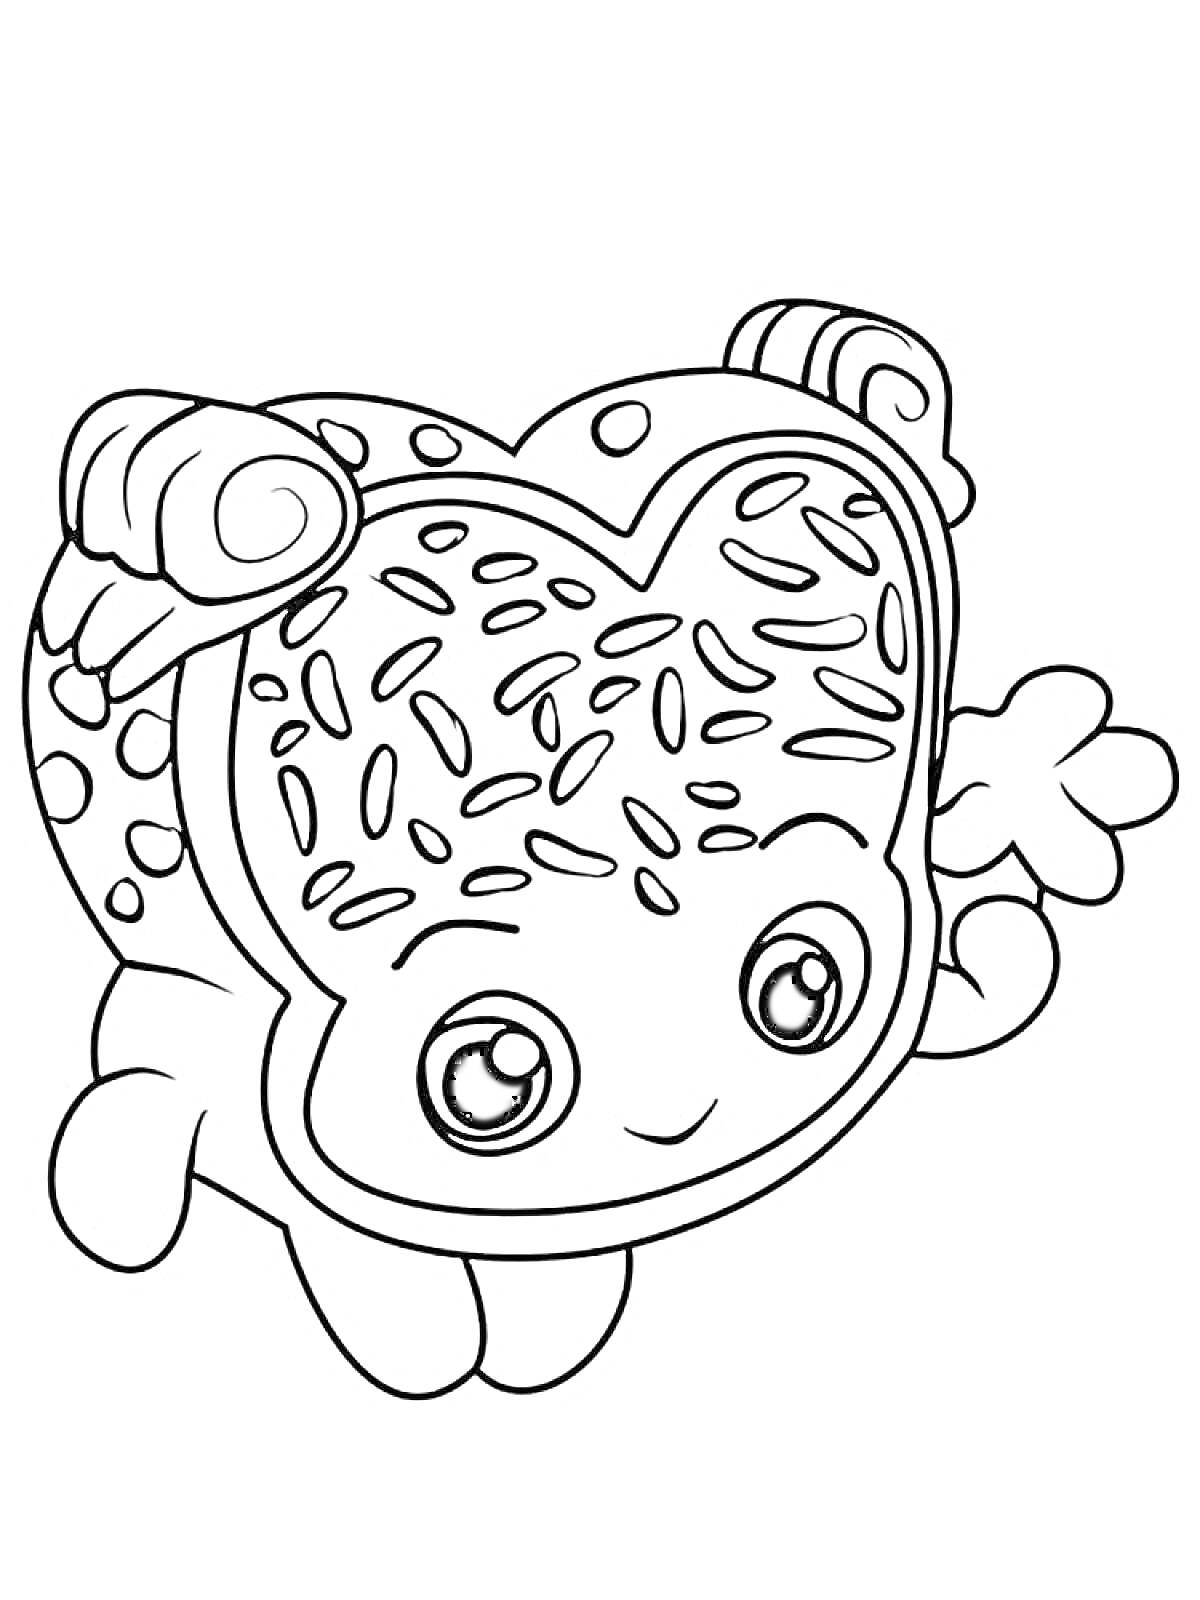 Раскраска Шопкинс - булочка с глазурью, руки, ноги, большие глаза